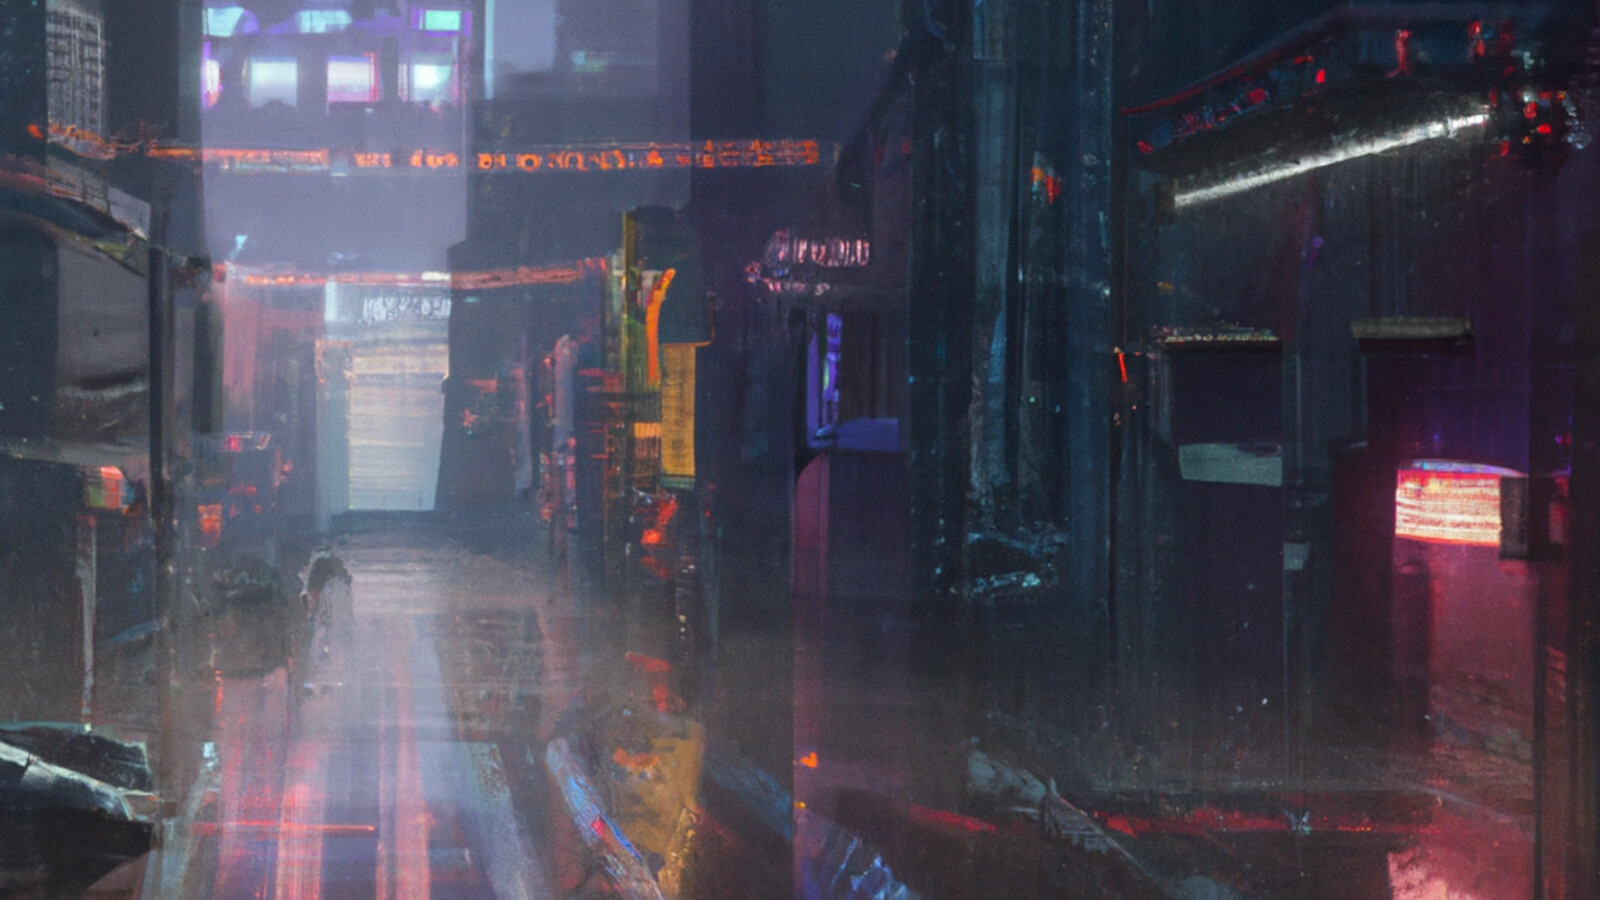 ArtStation - Cyberpunk Street 002